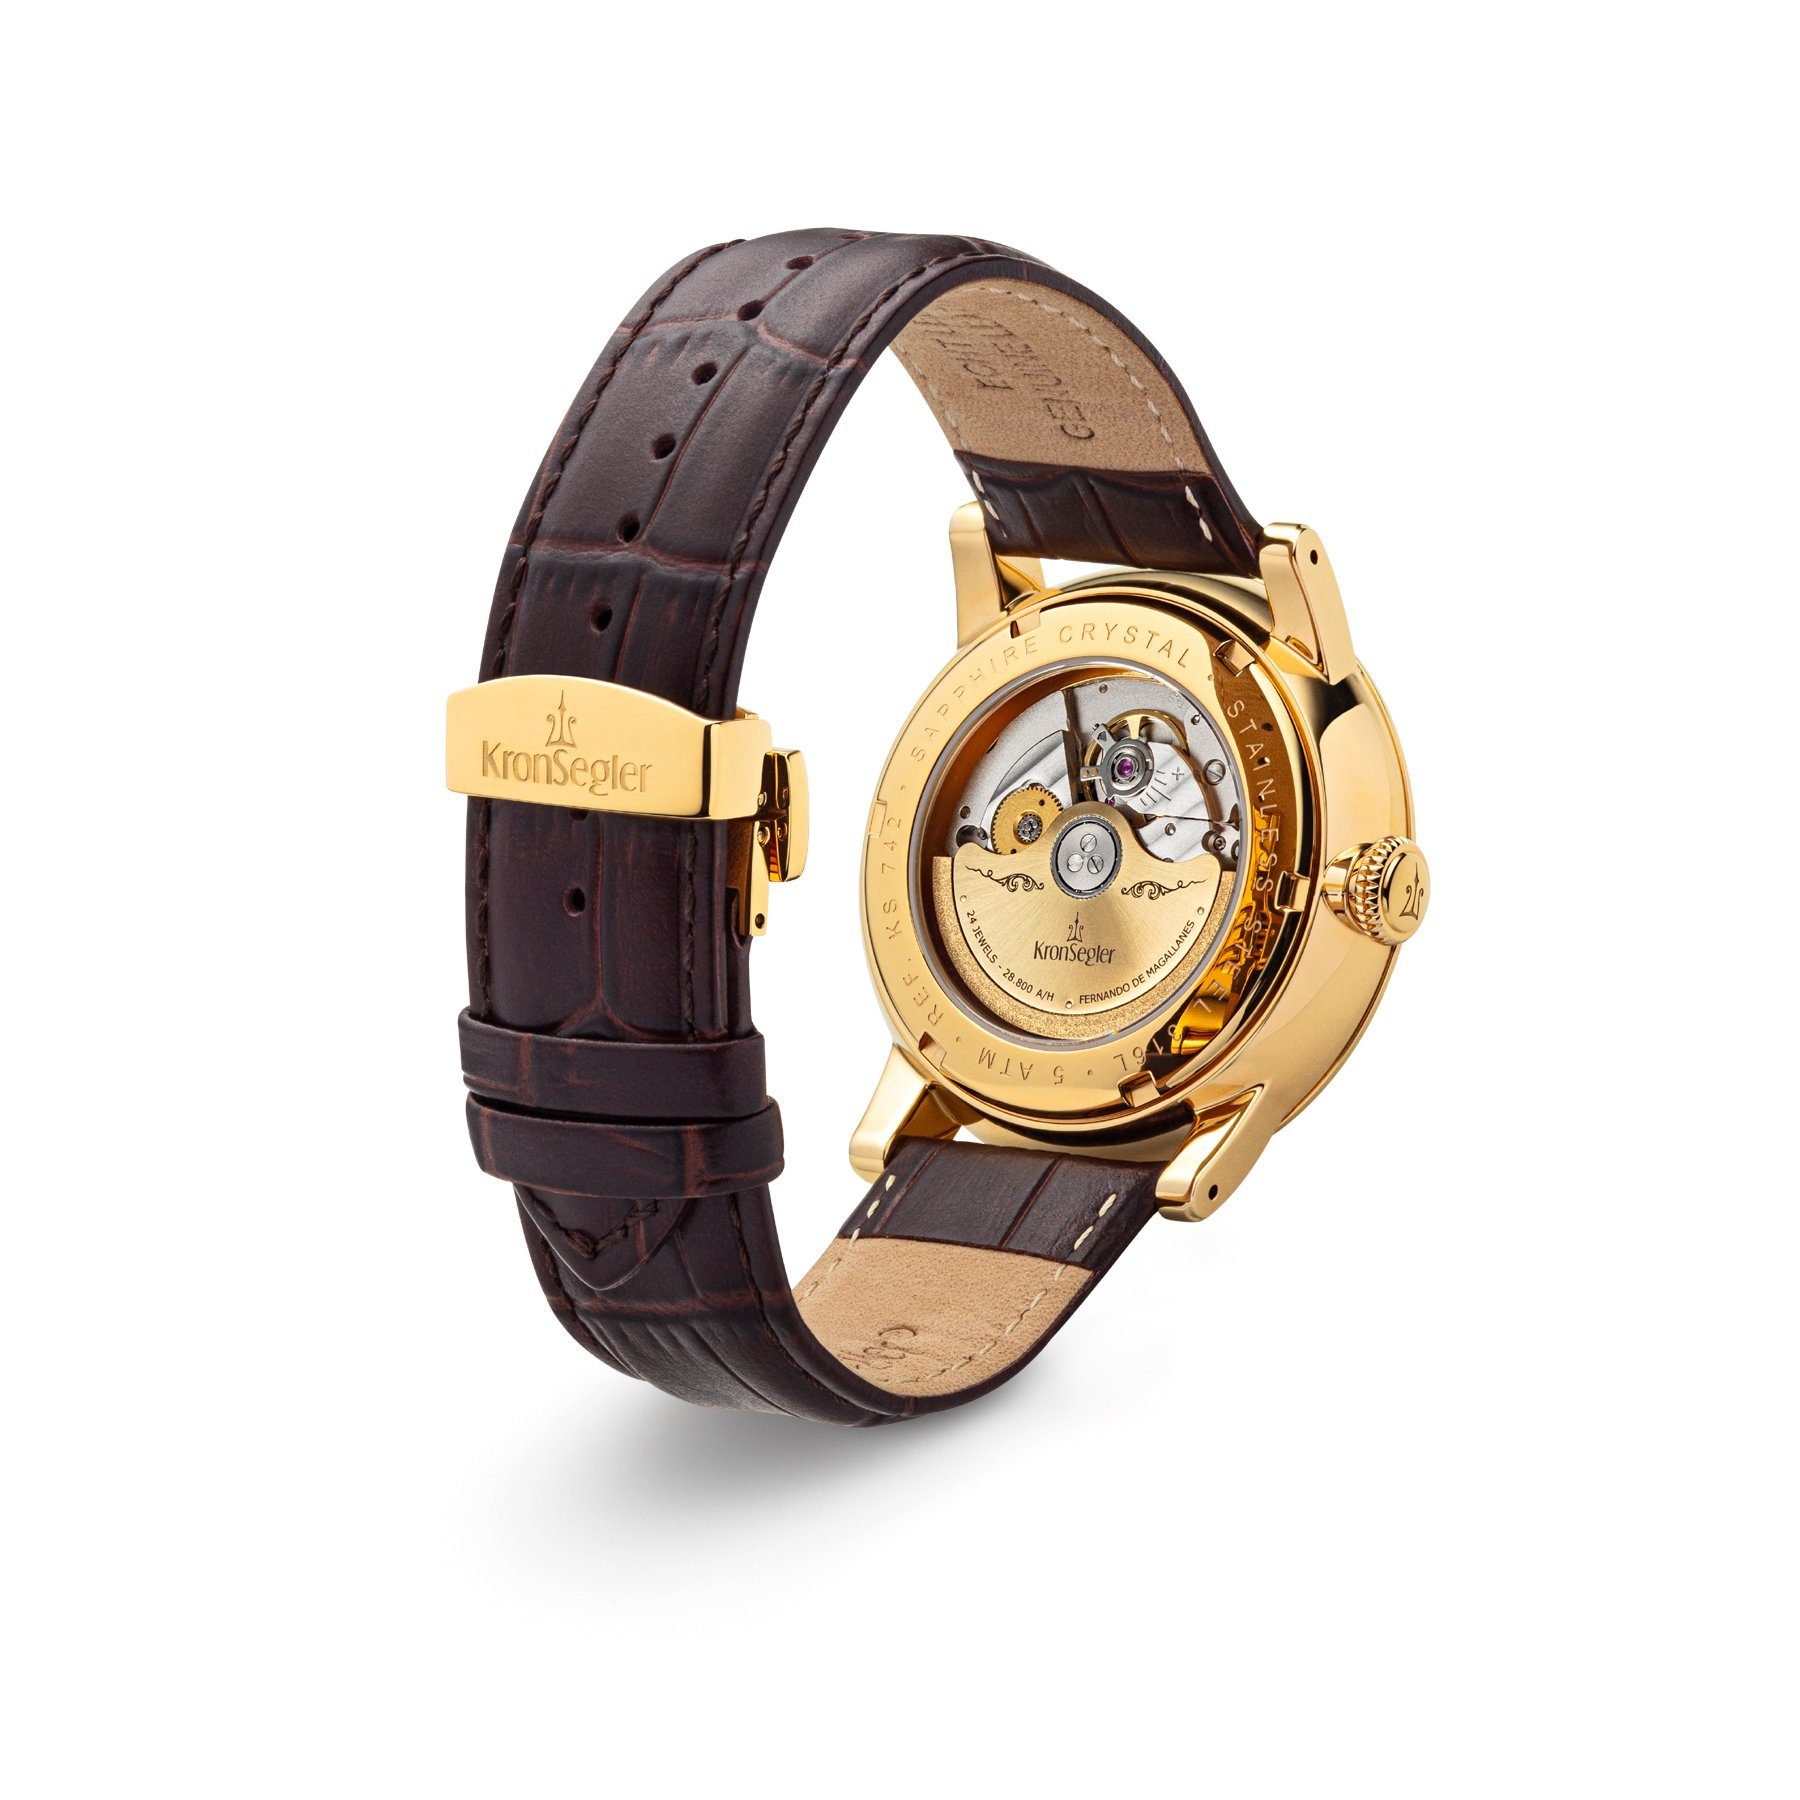 GMT Lederband, Kronsegler Herren Magallanes" mit Automatikuhr m. Armbanduhr gold-silberweiß/braun "Fernando Worldtimer de